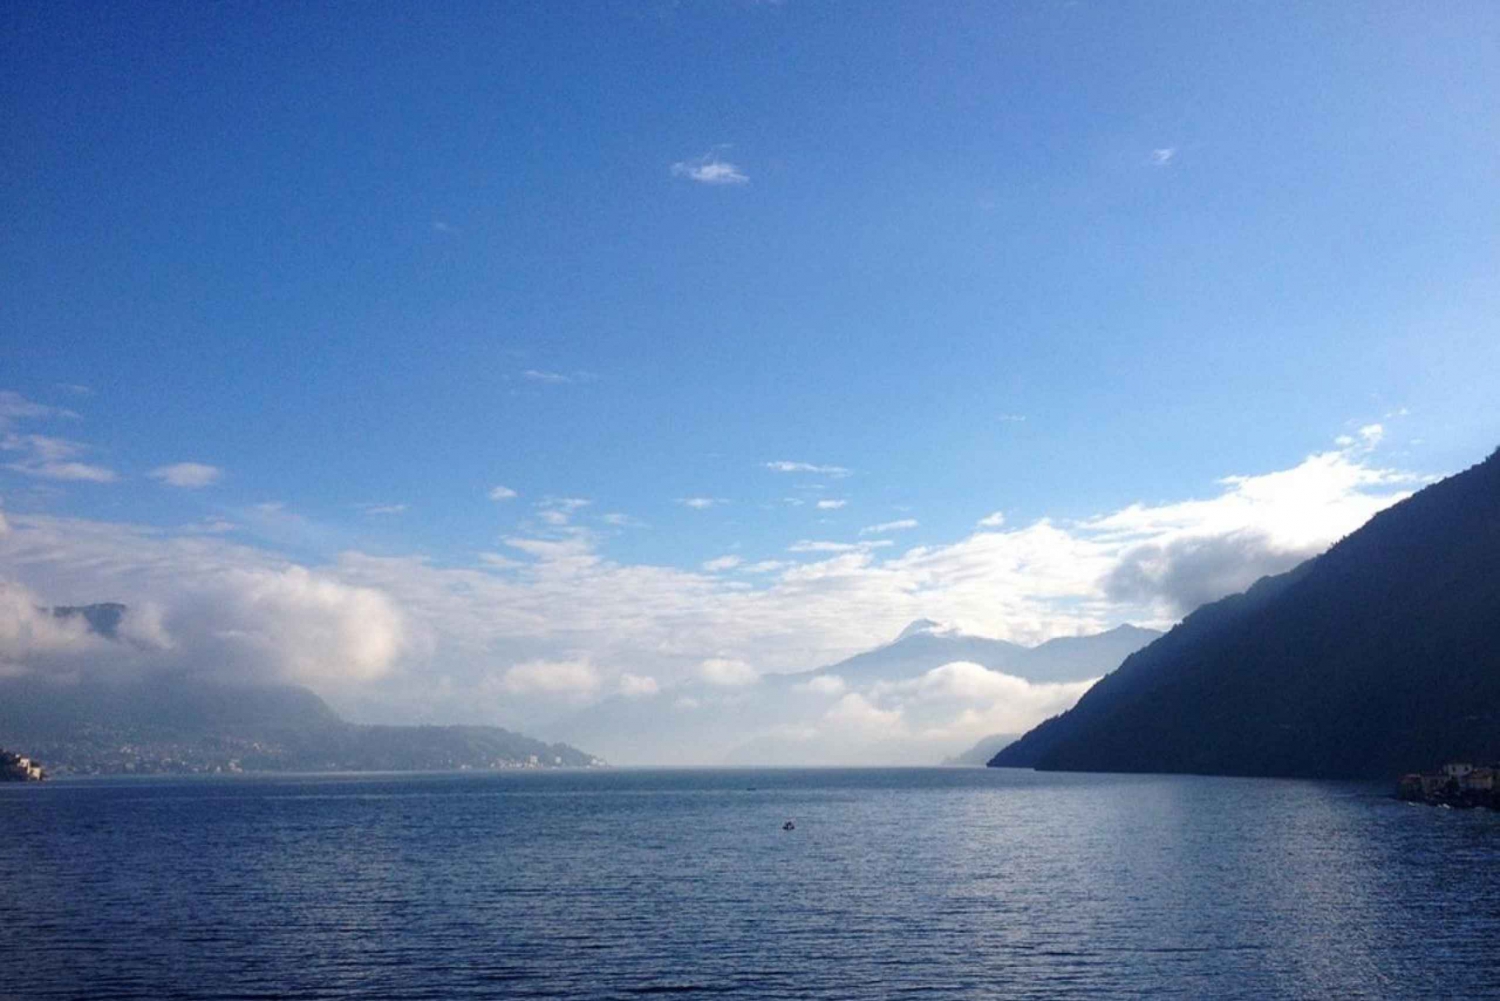 From Milan: Guided Tour of Como & Lake Como